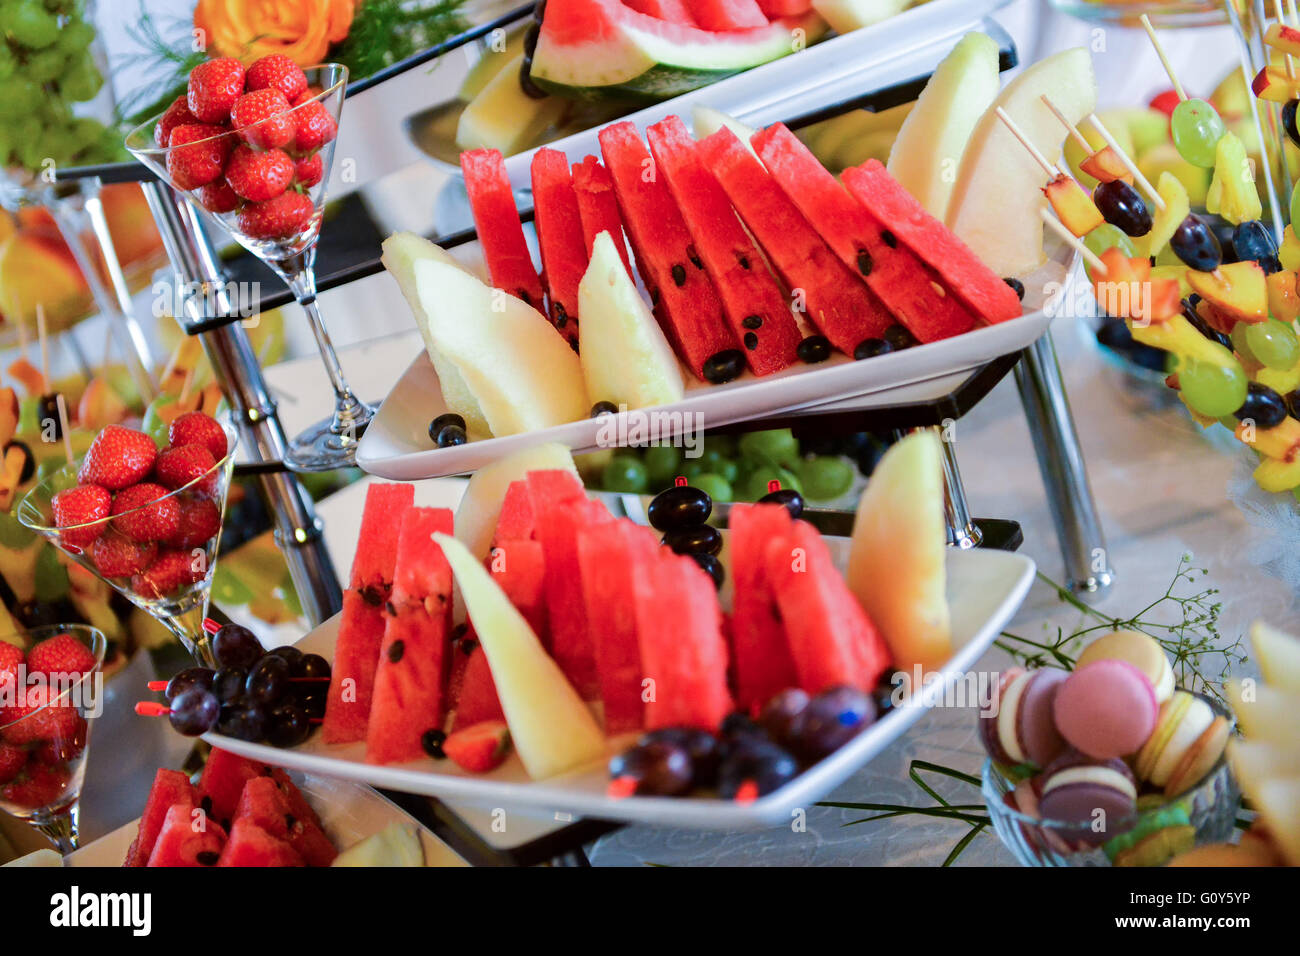 Plaques avec différents types de fruits : raisins, fraises, ananas, pastèque, abricots Banque D'Images